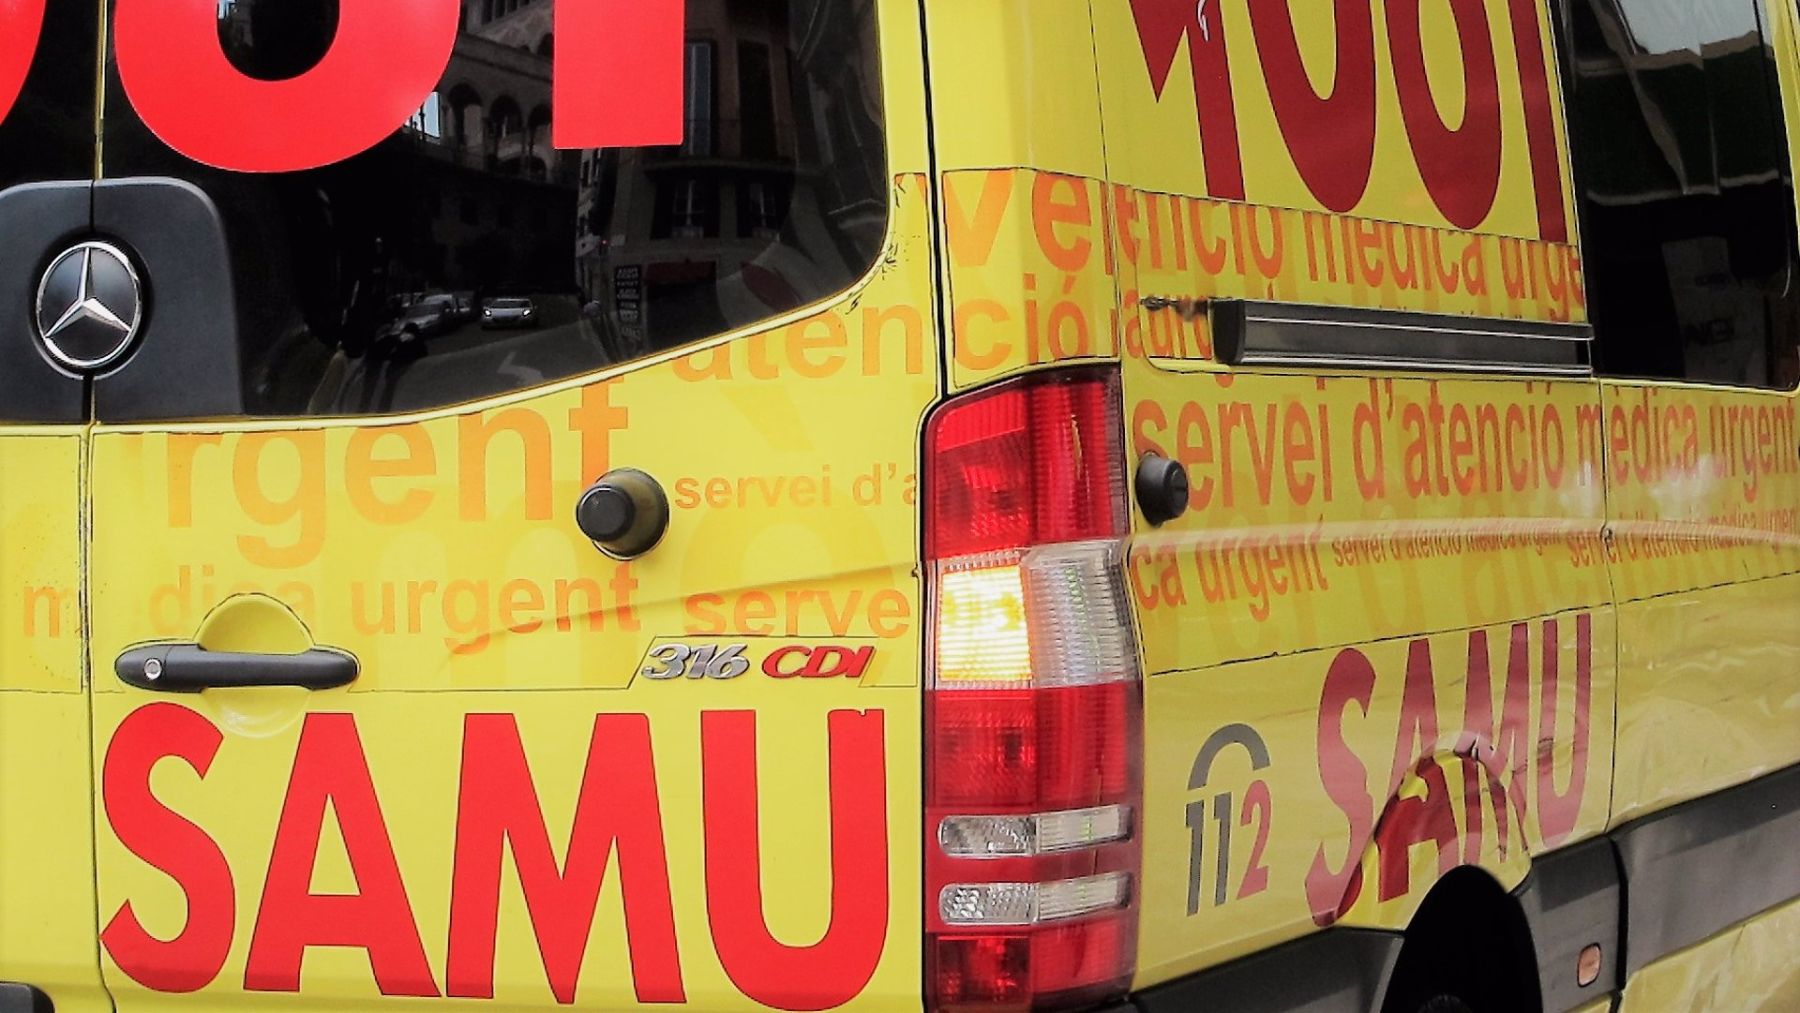 Una ambulancia del SAMU 061